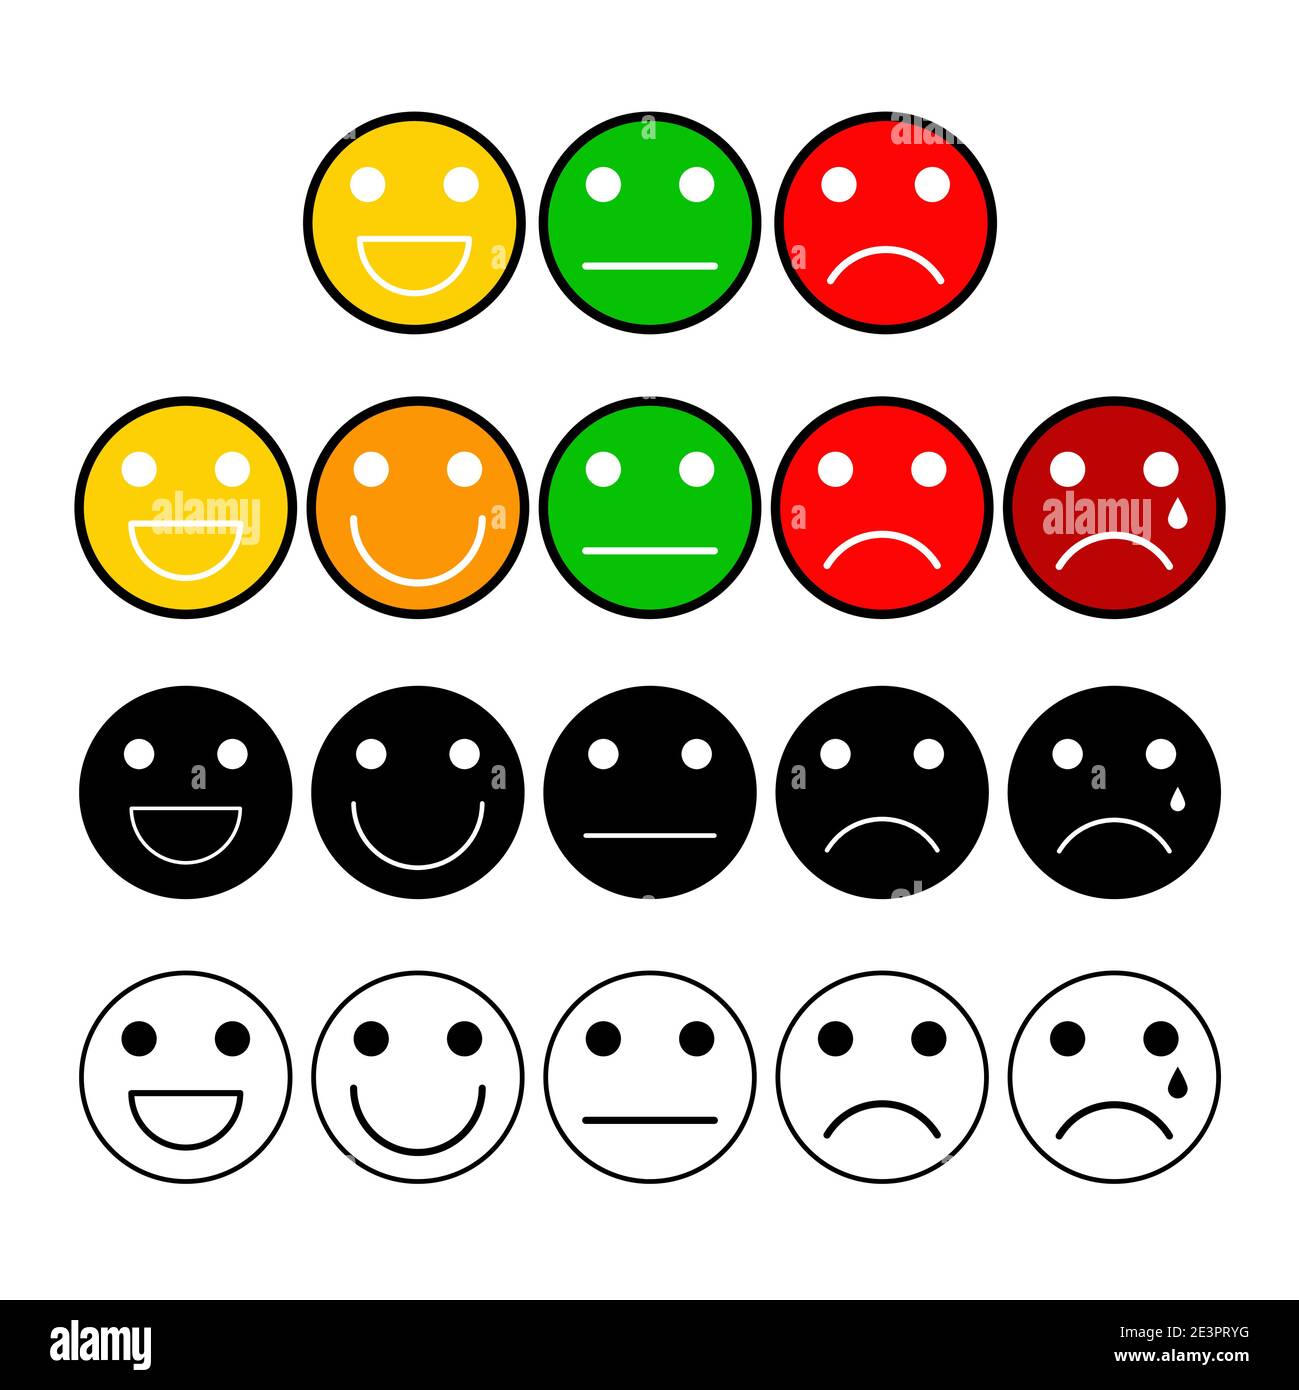 Schaltflächen für die Umfrage zur Kundenmeinung sind gesetzt. Stimmungsgrad mit Emoji-Gesicht. Symbole für die Skala zur Messung der Kundenzufriedenheit. Vektor-Illustration isoliert auf weißem BA Stock Vektor